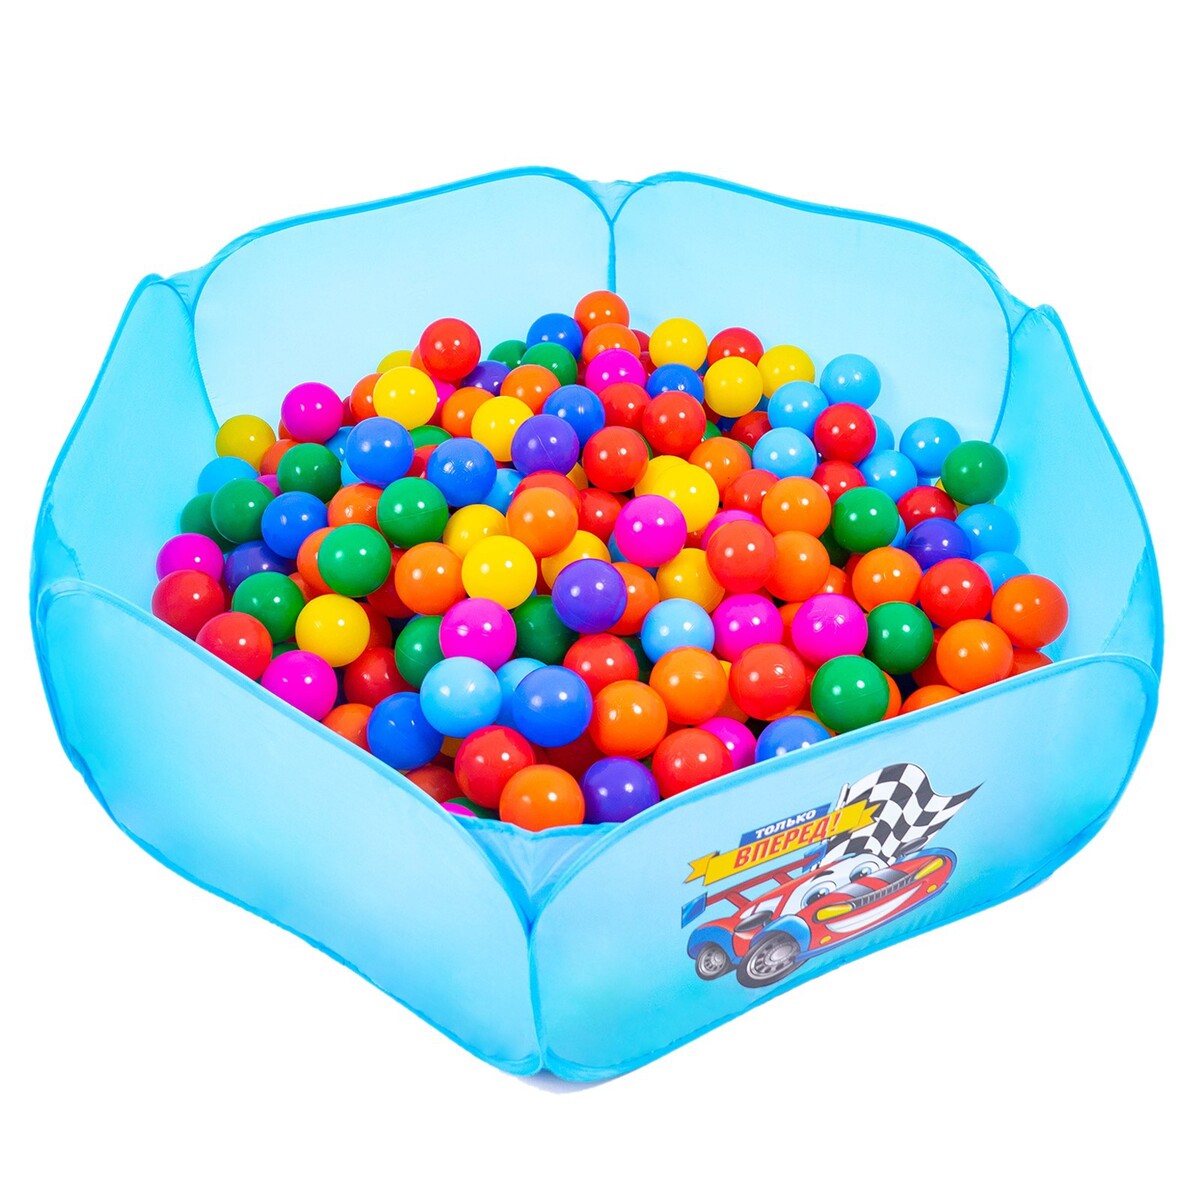 Шарики для сухого бассейна с рисунком, диаметр шара 7,5 см, набор 30 штук, разноцветные шарики для сухого бассейна 30 штук диаметр 5 см